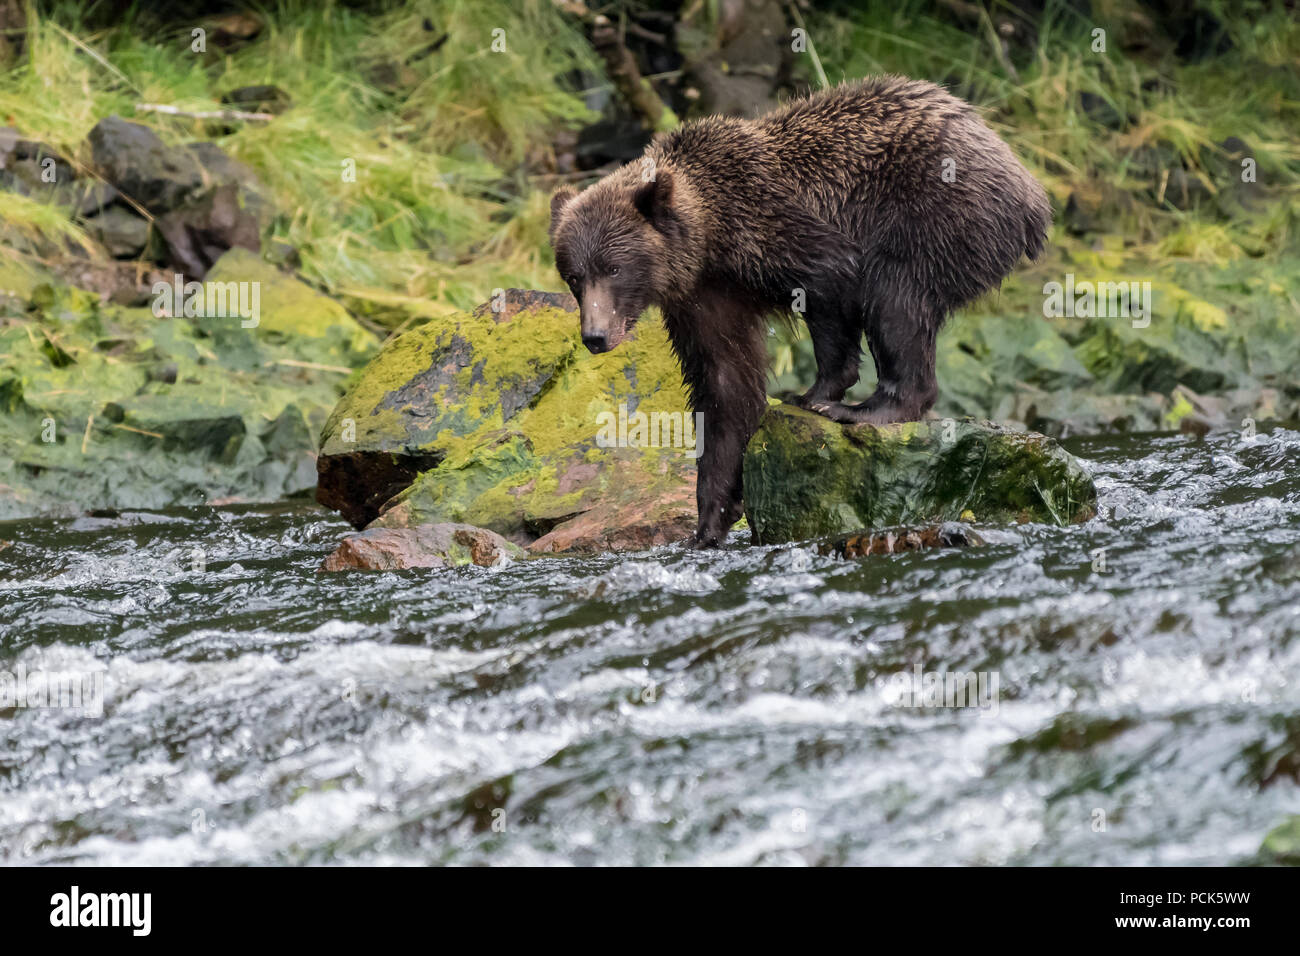 Ein Grizzly (braun) Bär (Ursus arctos Horribilis) steht auf einem Felsen im Fluss für Lachs in Alaska, USA suchen. Stockfoto